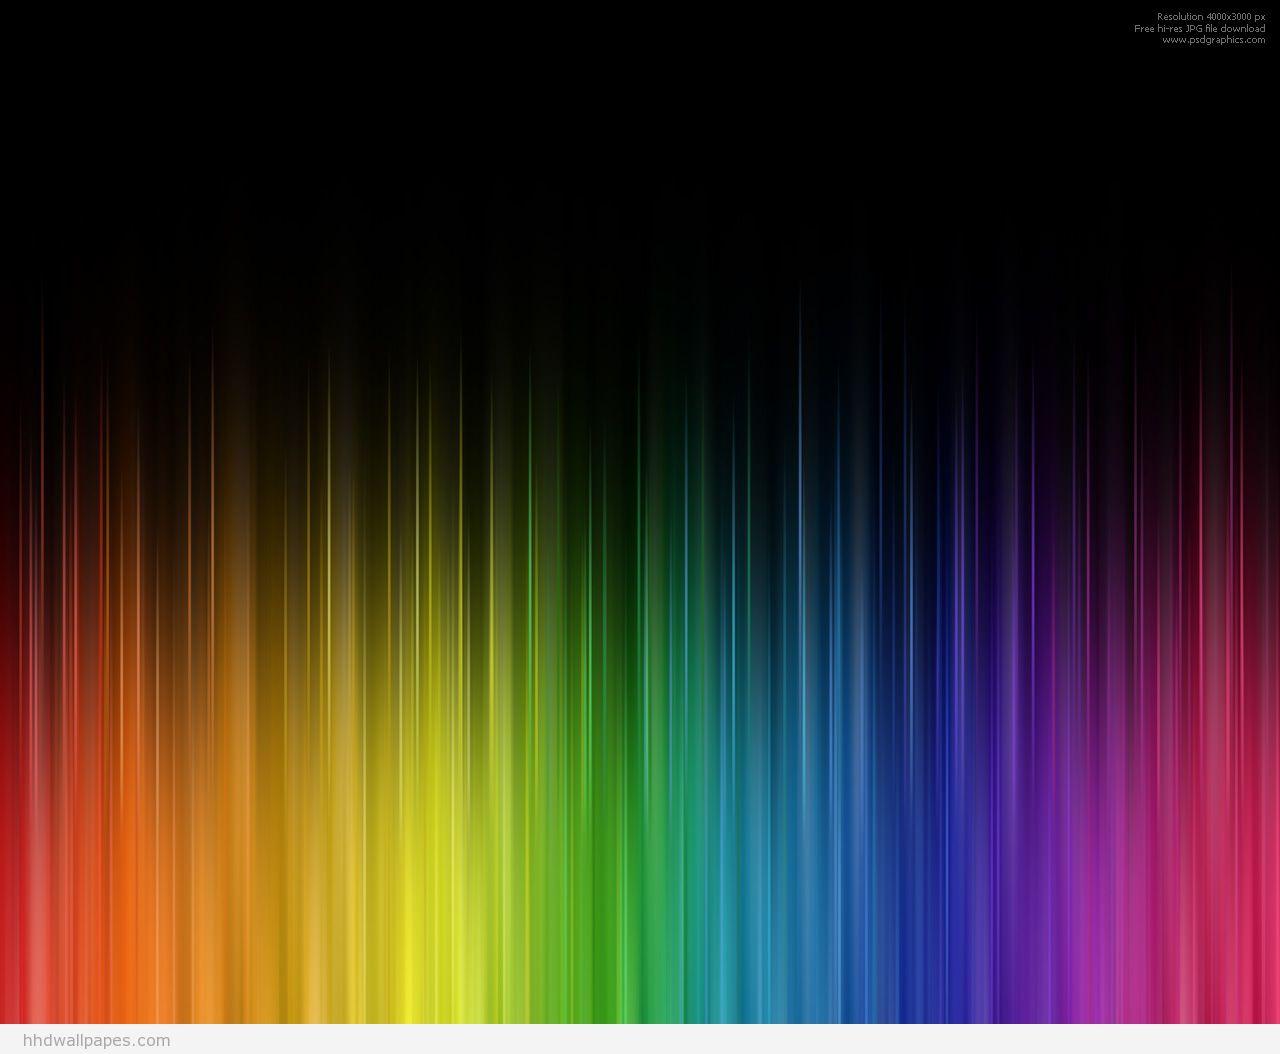 Color Full HD Abstract Wallpaper Deskx1054PX Wallpaper